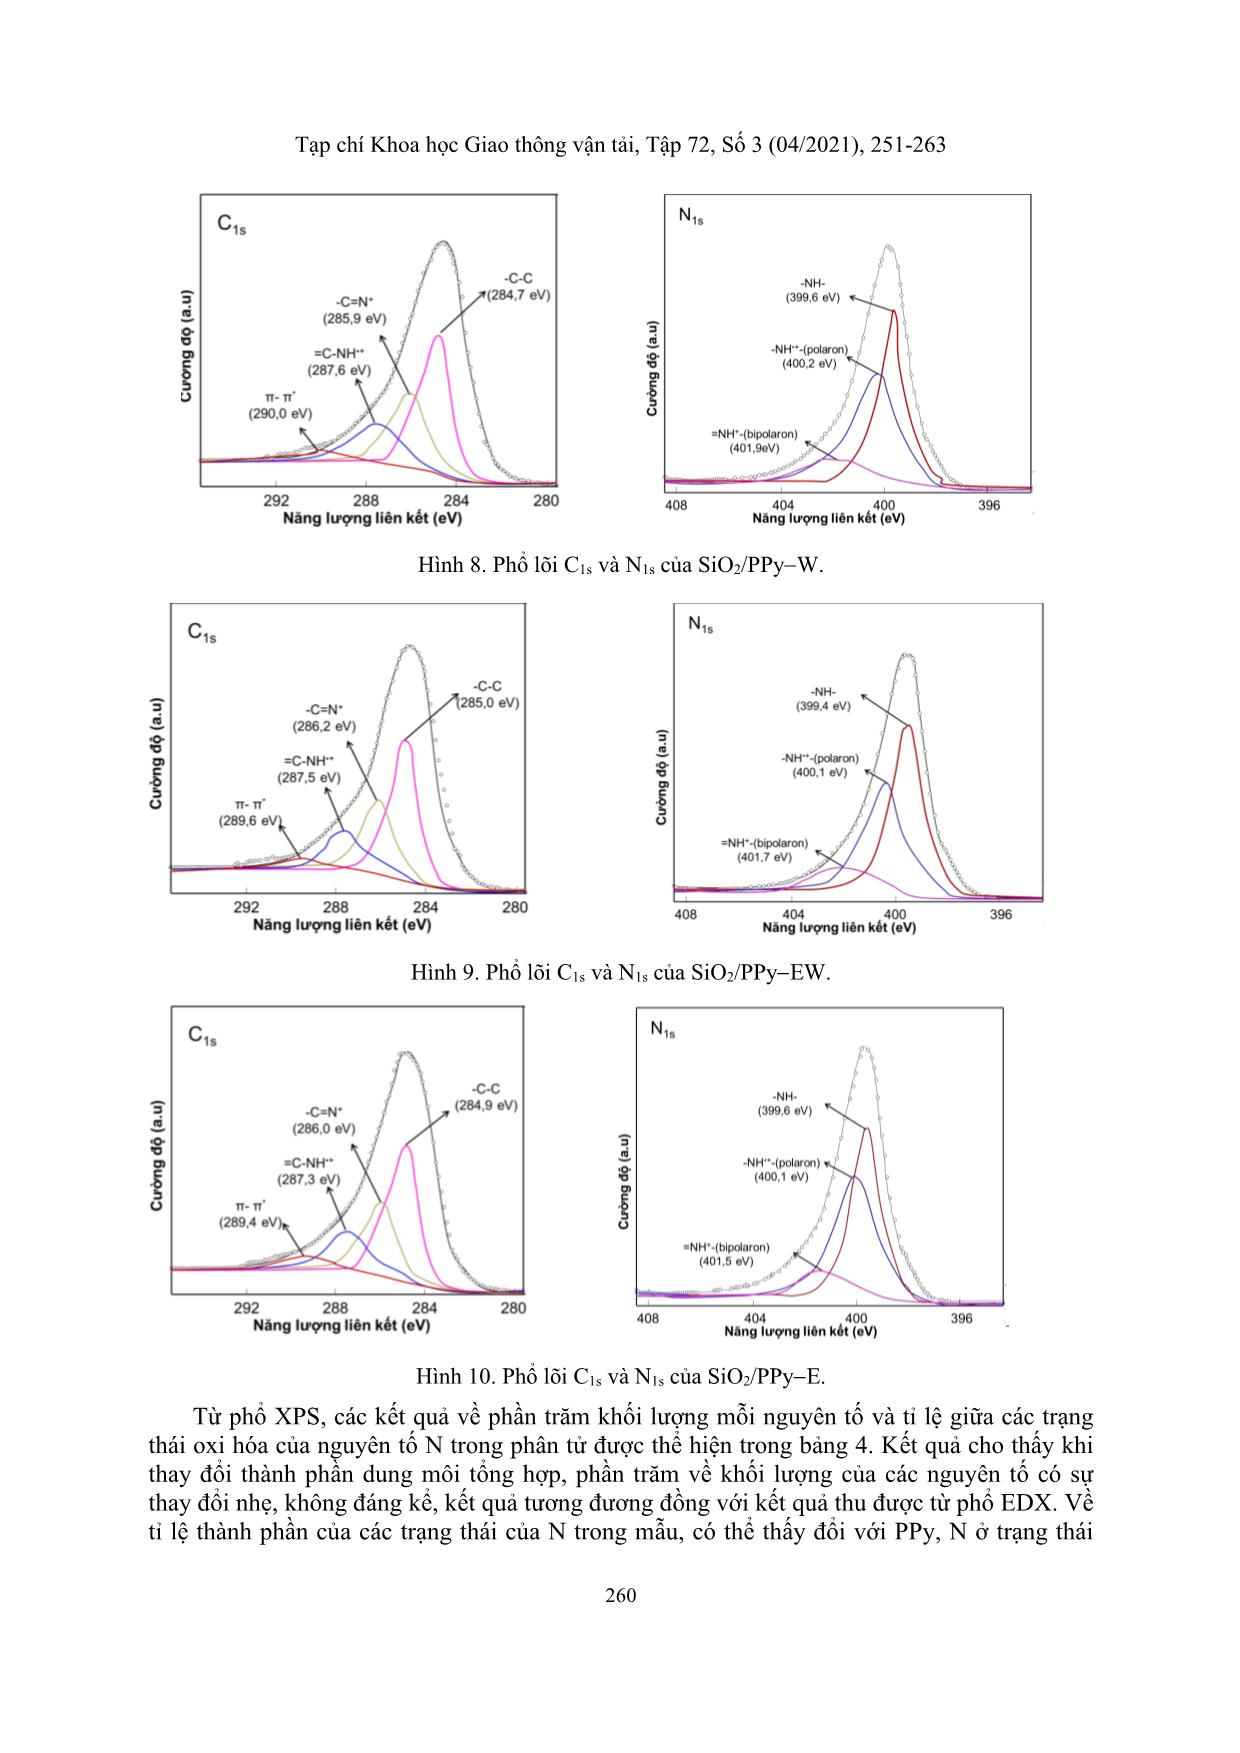 Nghiên cứu sự ảnh hưởng của dung môi đến quá trình tổng hợp nano composite SiO₂/PPY trang 10